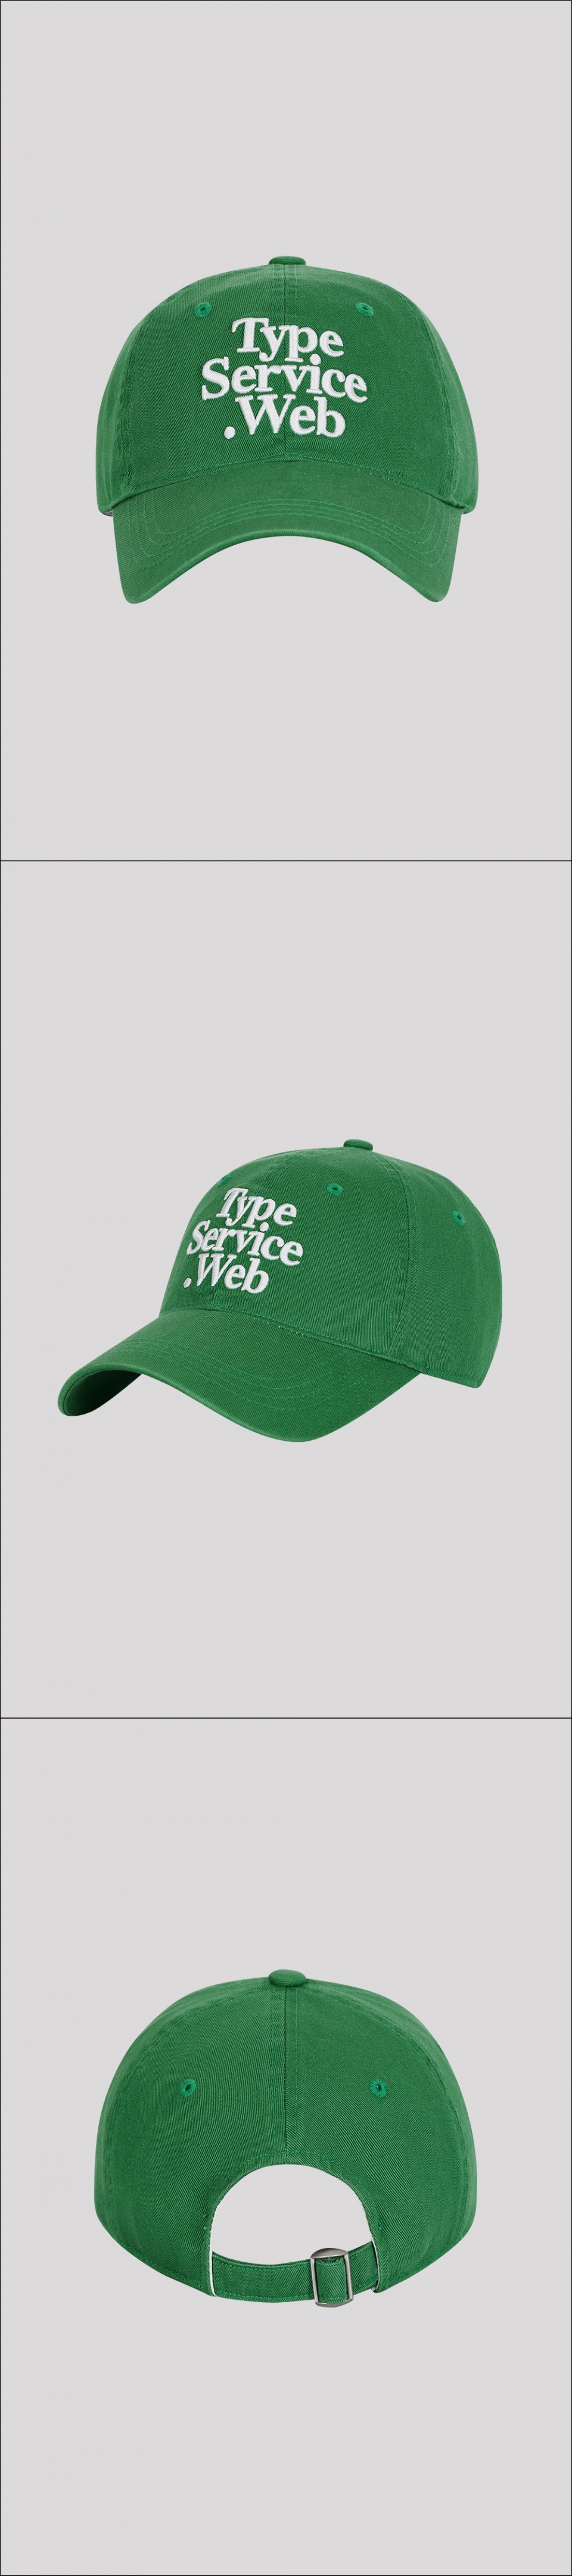 타입서비스(TYPE SERVICE) Typeservice Web Cap [Green]